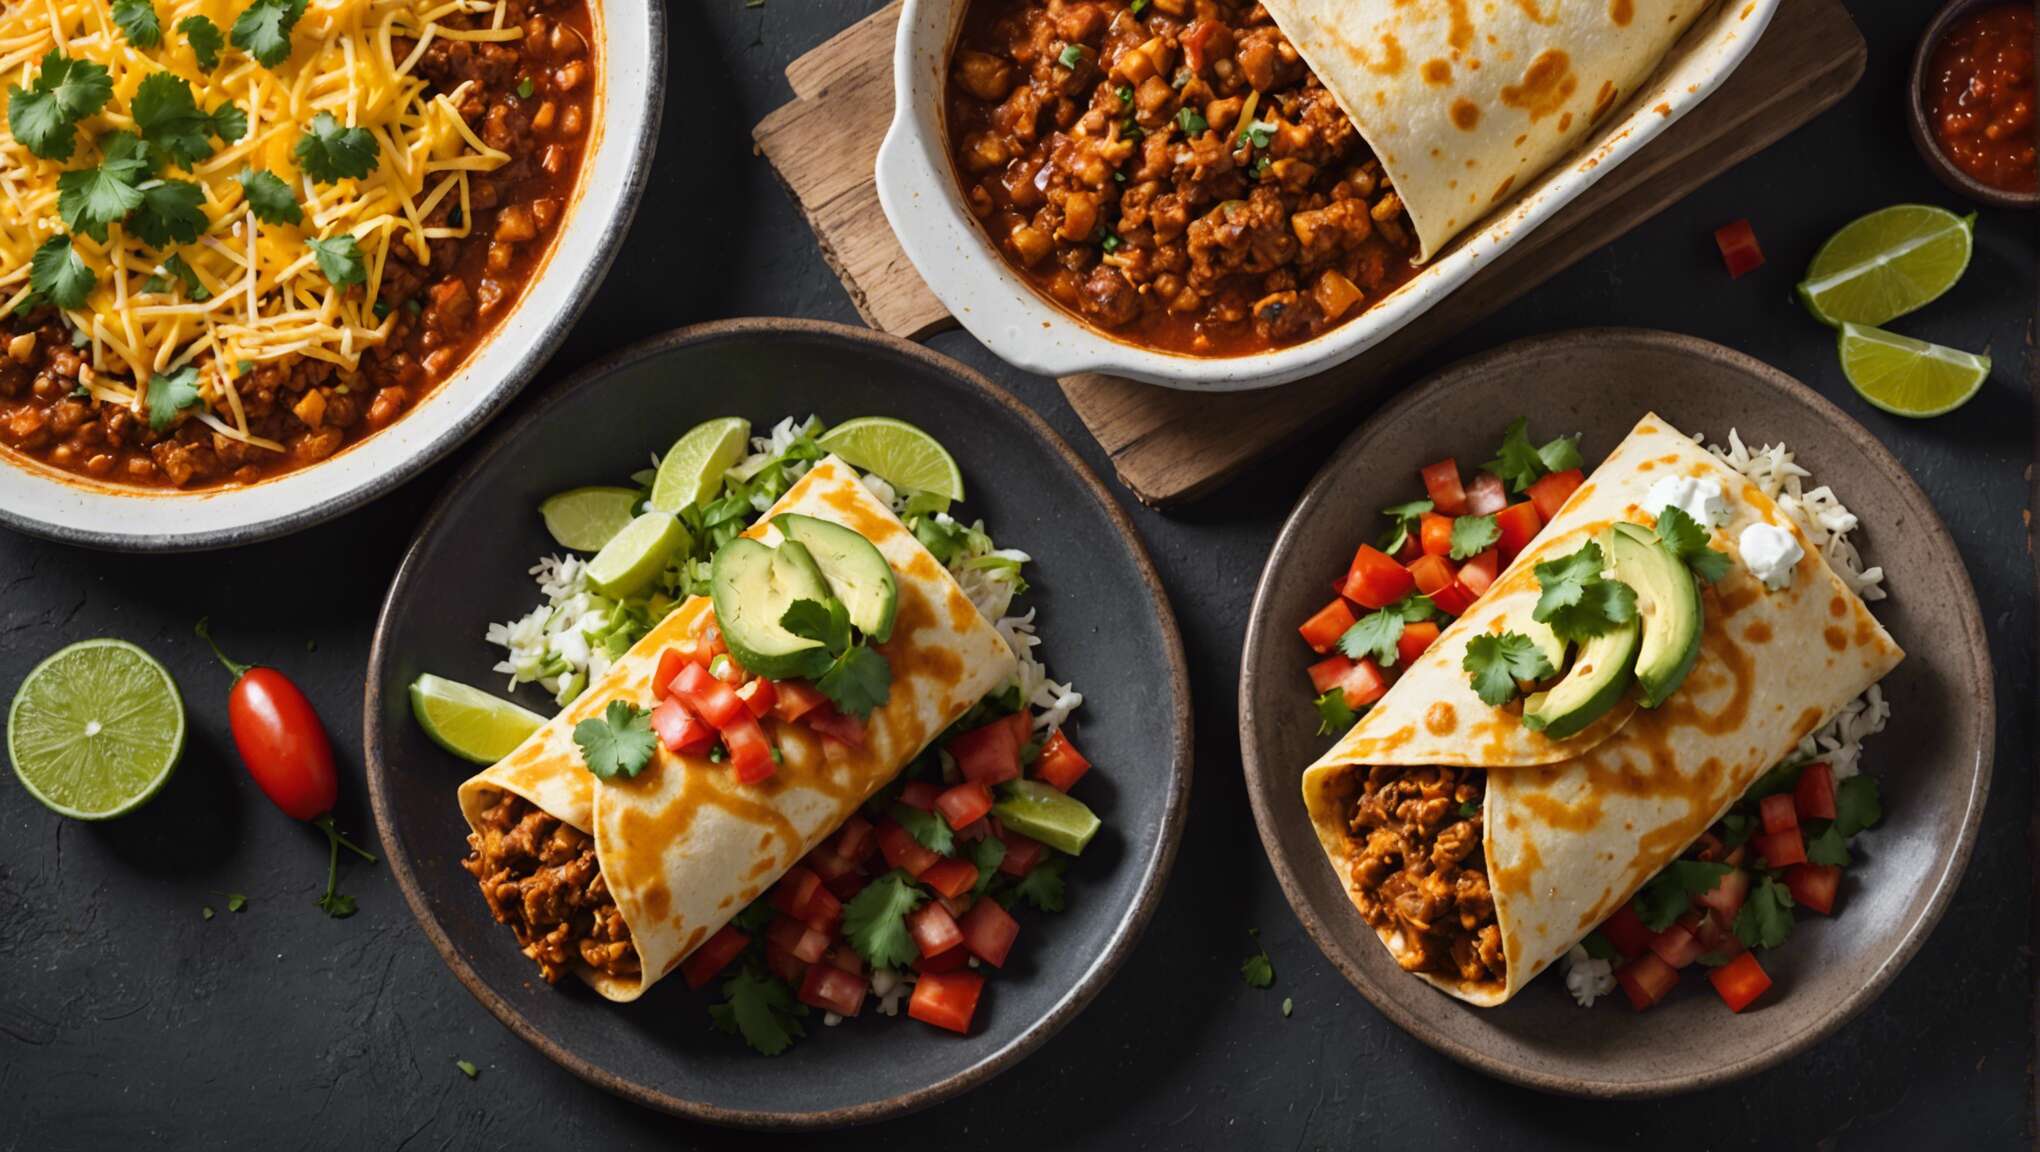 Enchilada versus burrito : identifier les caractéristiques distinctives